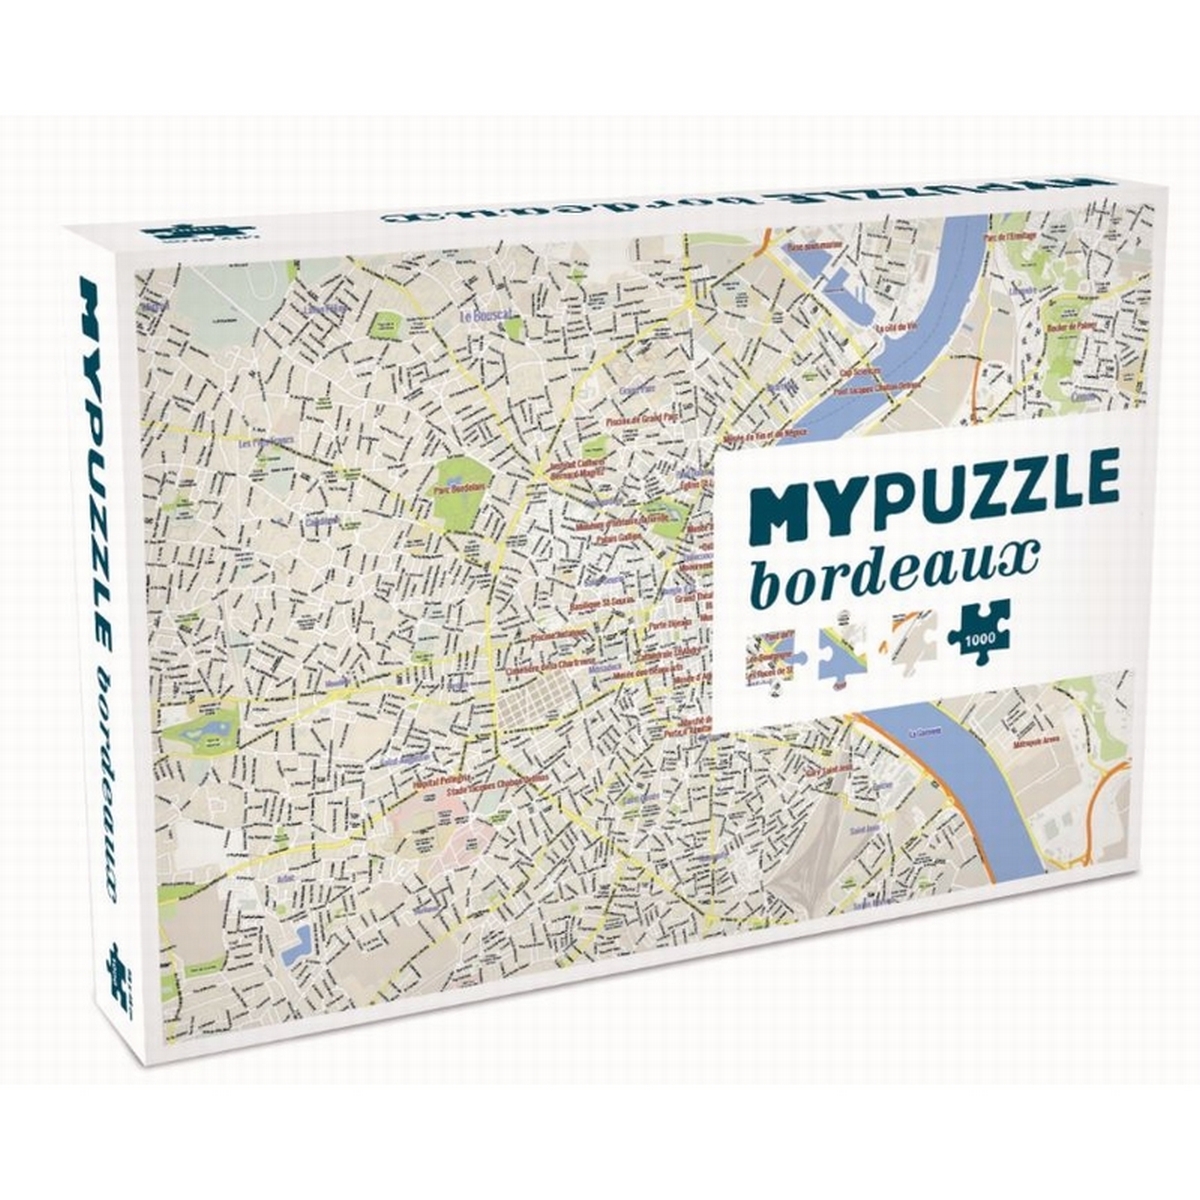 my puzzle Bordeaux helvetic une idee cadeau chez ugo et lea (1)